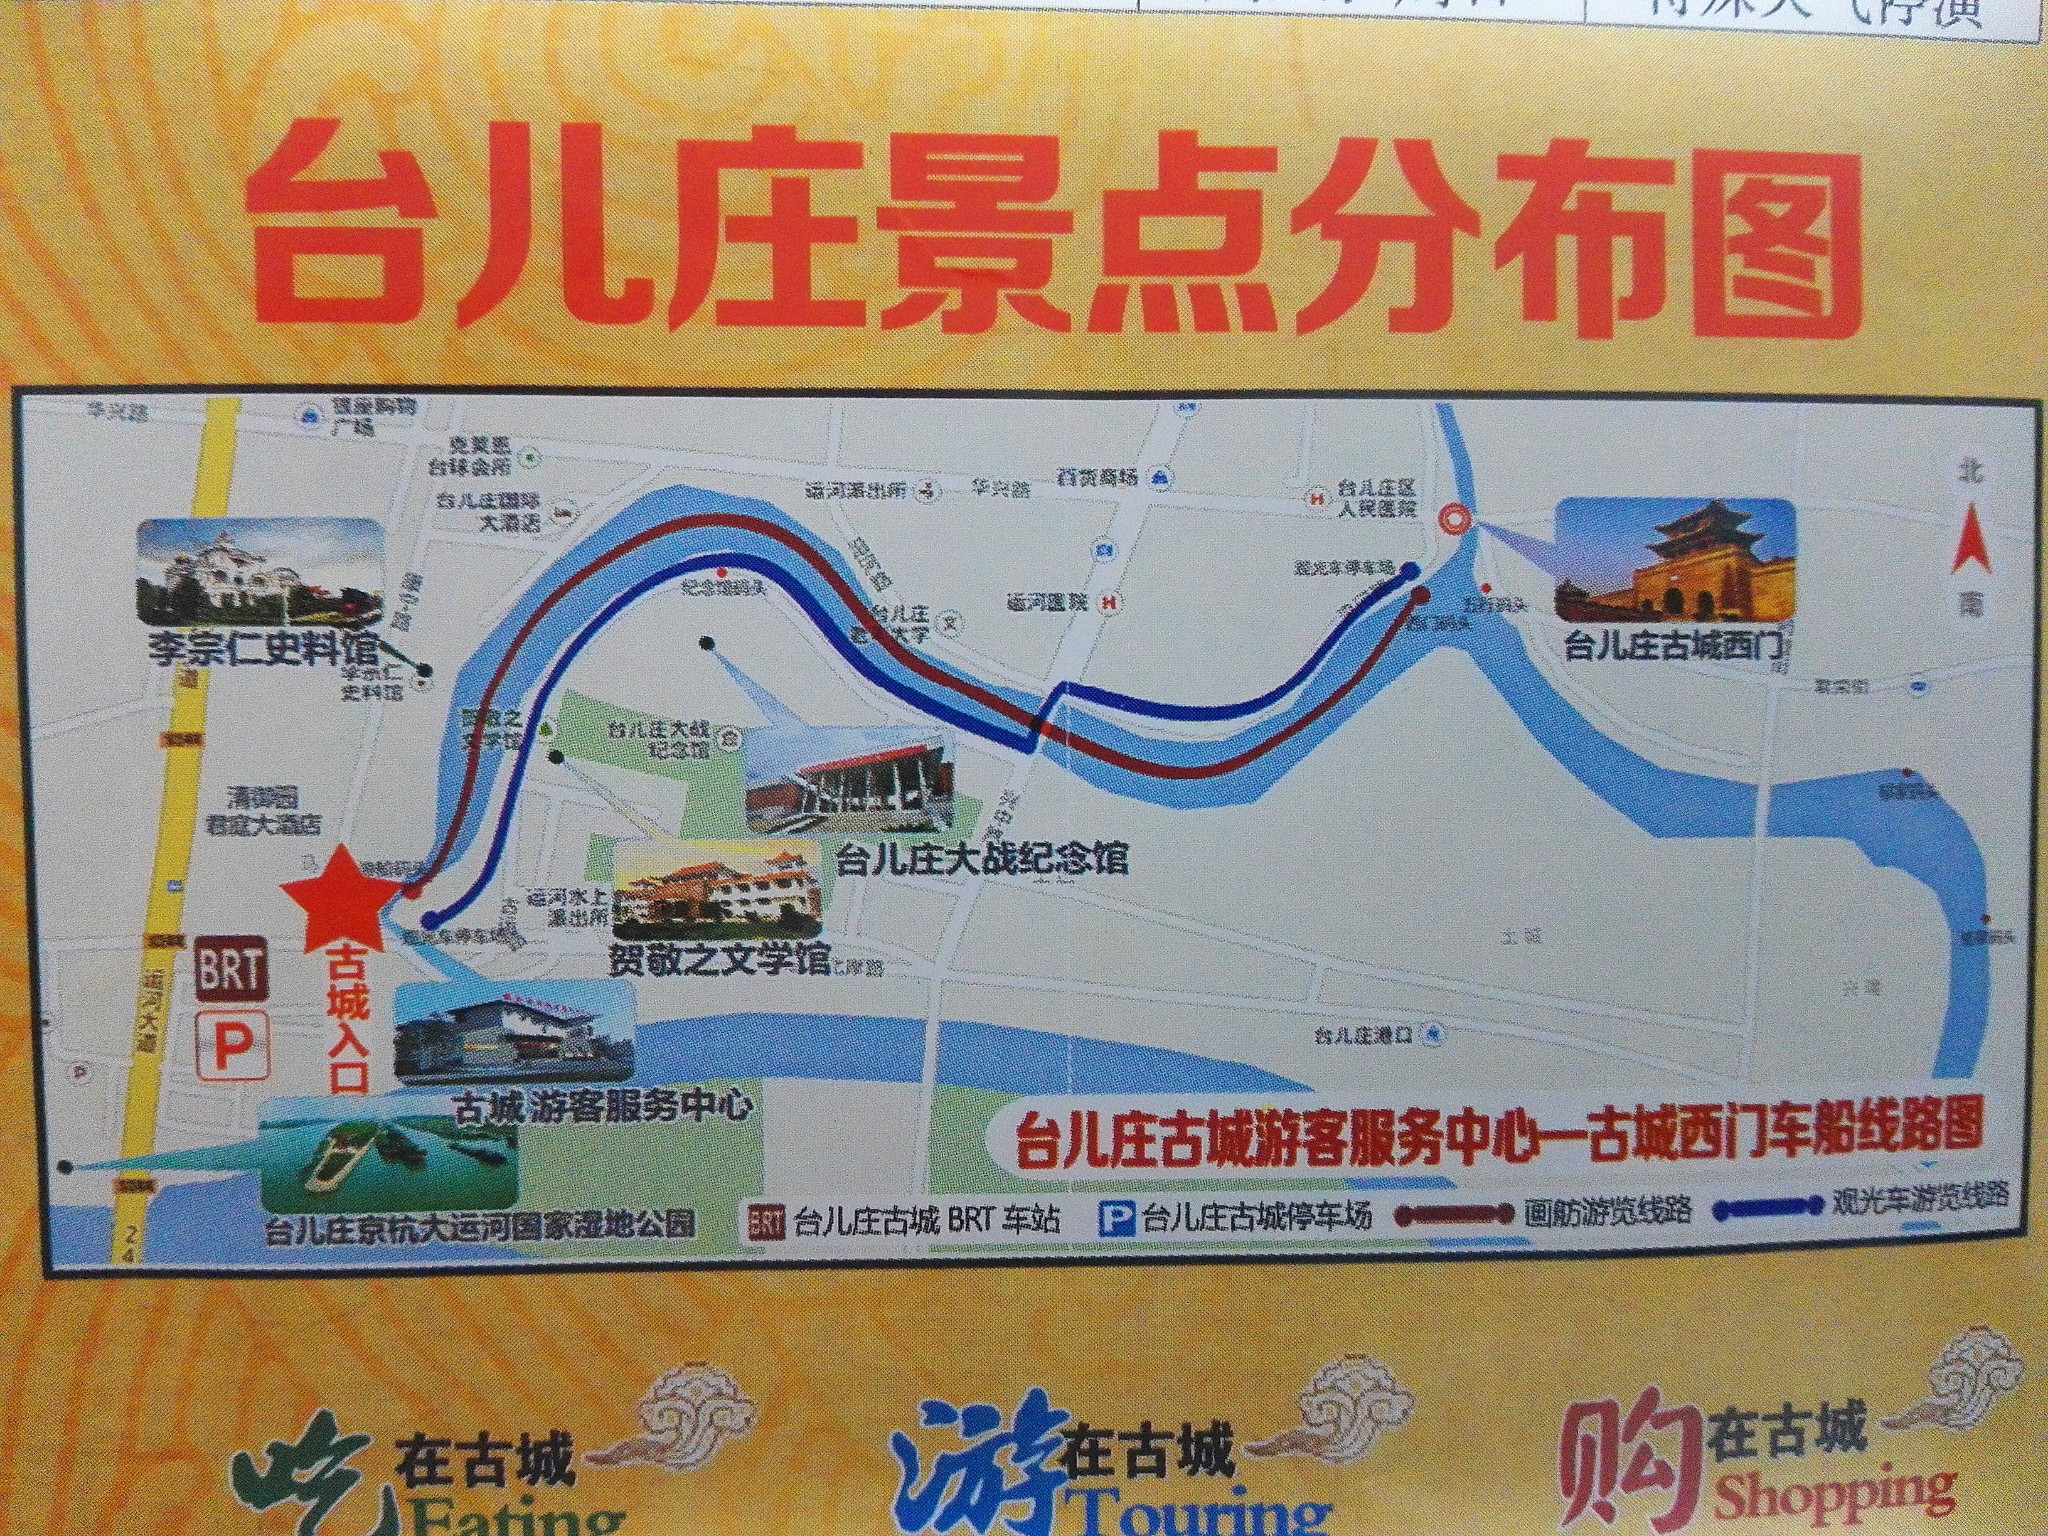 滕州和枣庄通高铁真心方便,但是最纠结的就是高铁站距离市区和景点非